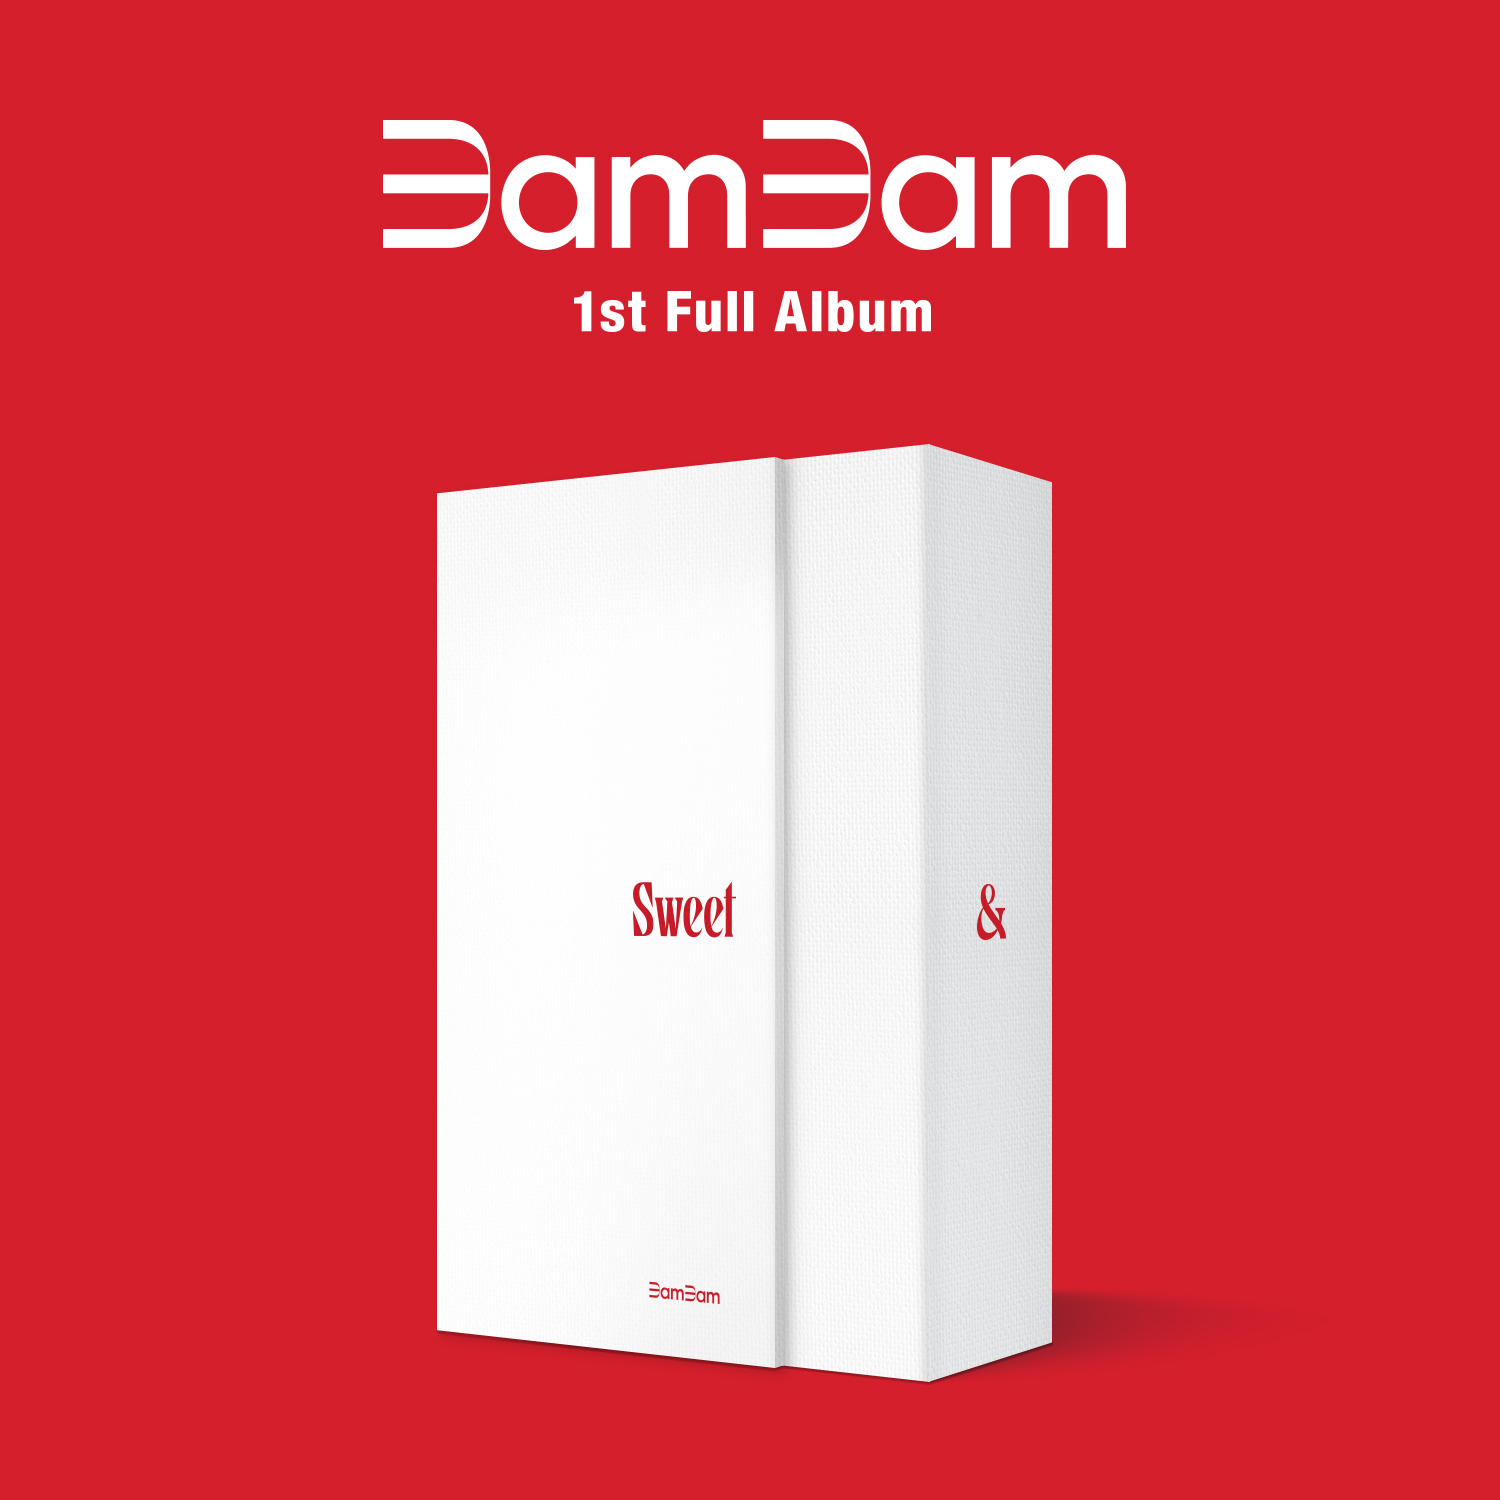 BamBam - 1st Full Album [Sour & Sweet] (Sweet Ver.)